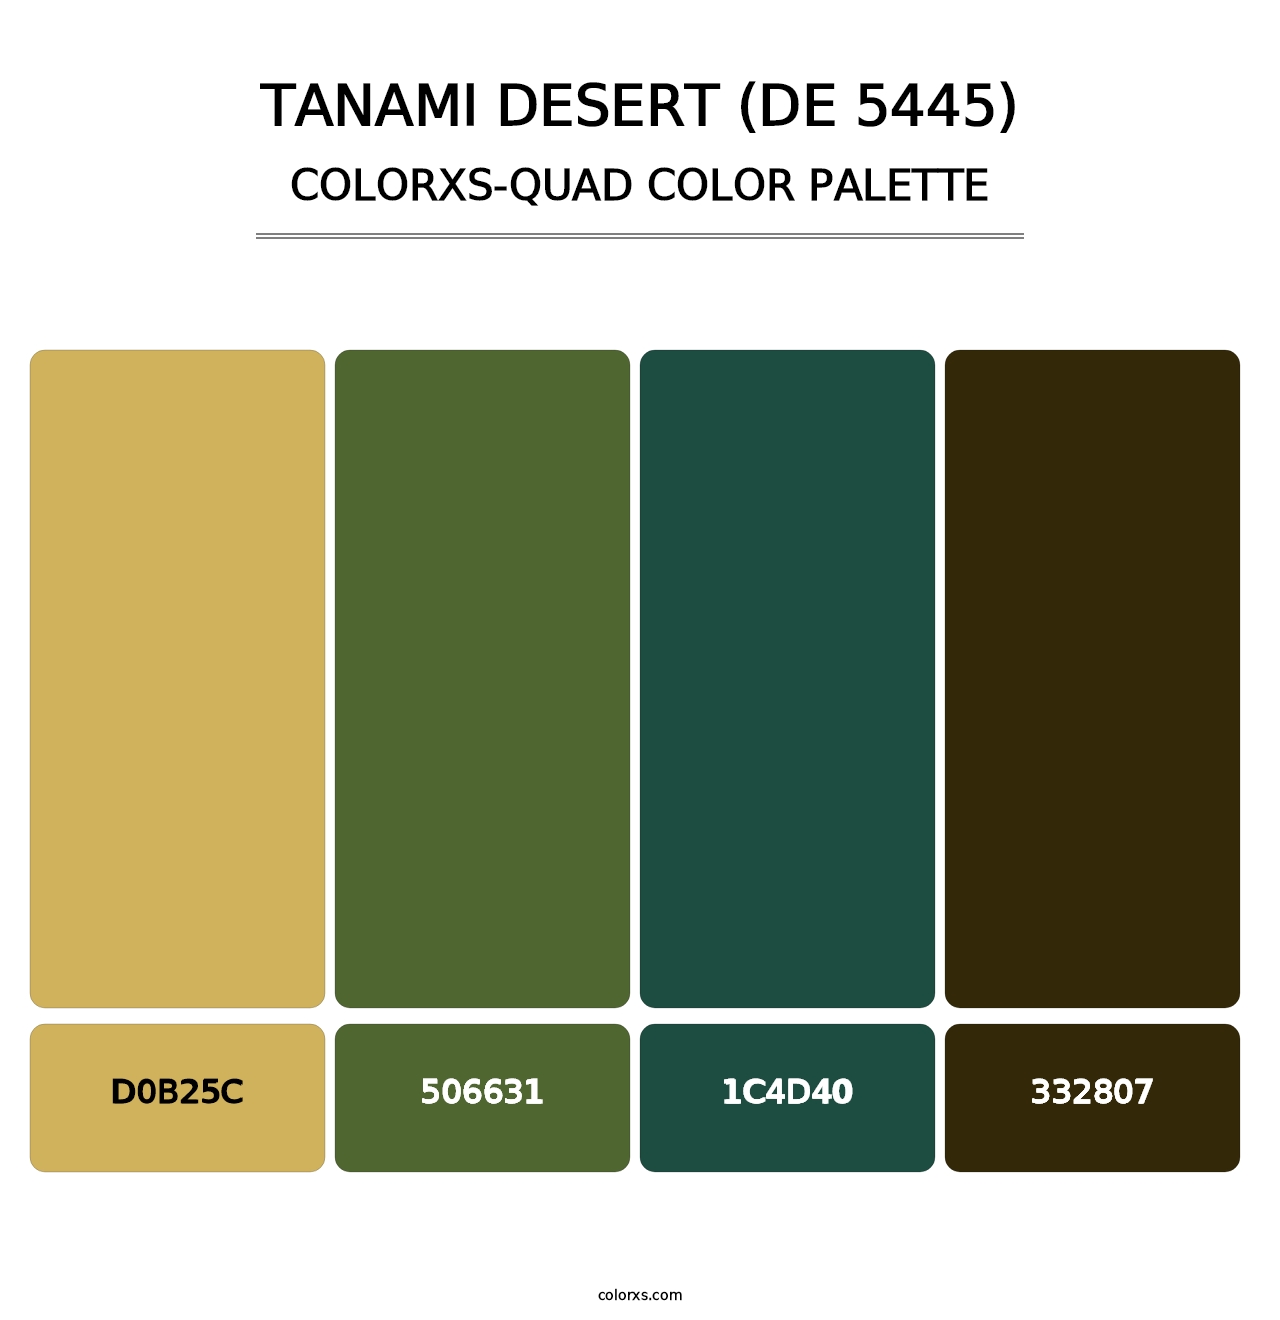 Tanami Desert (DE 5445) - Colorxs Quad Palette